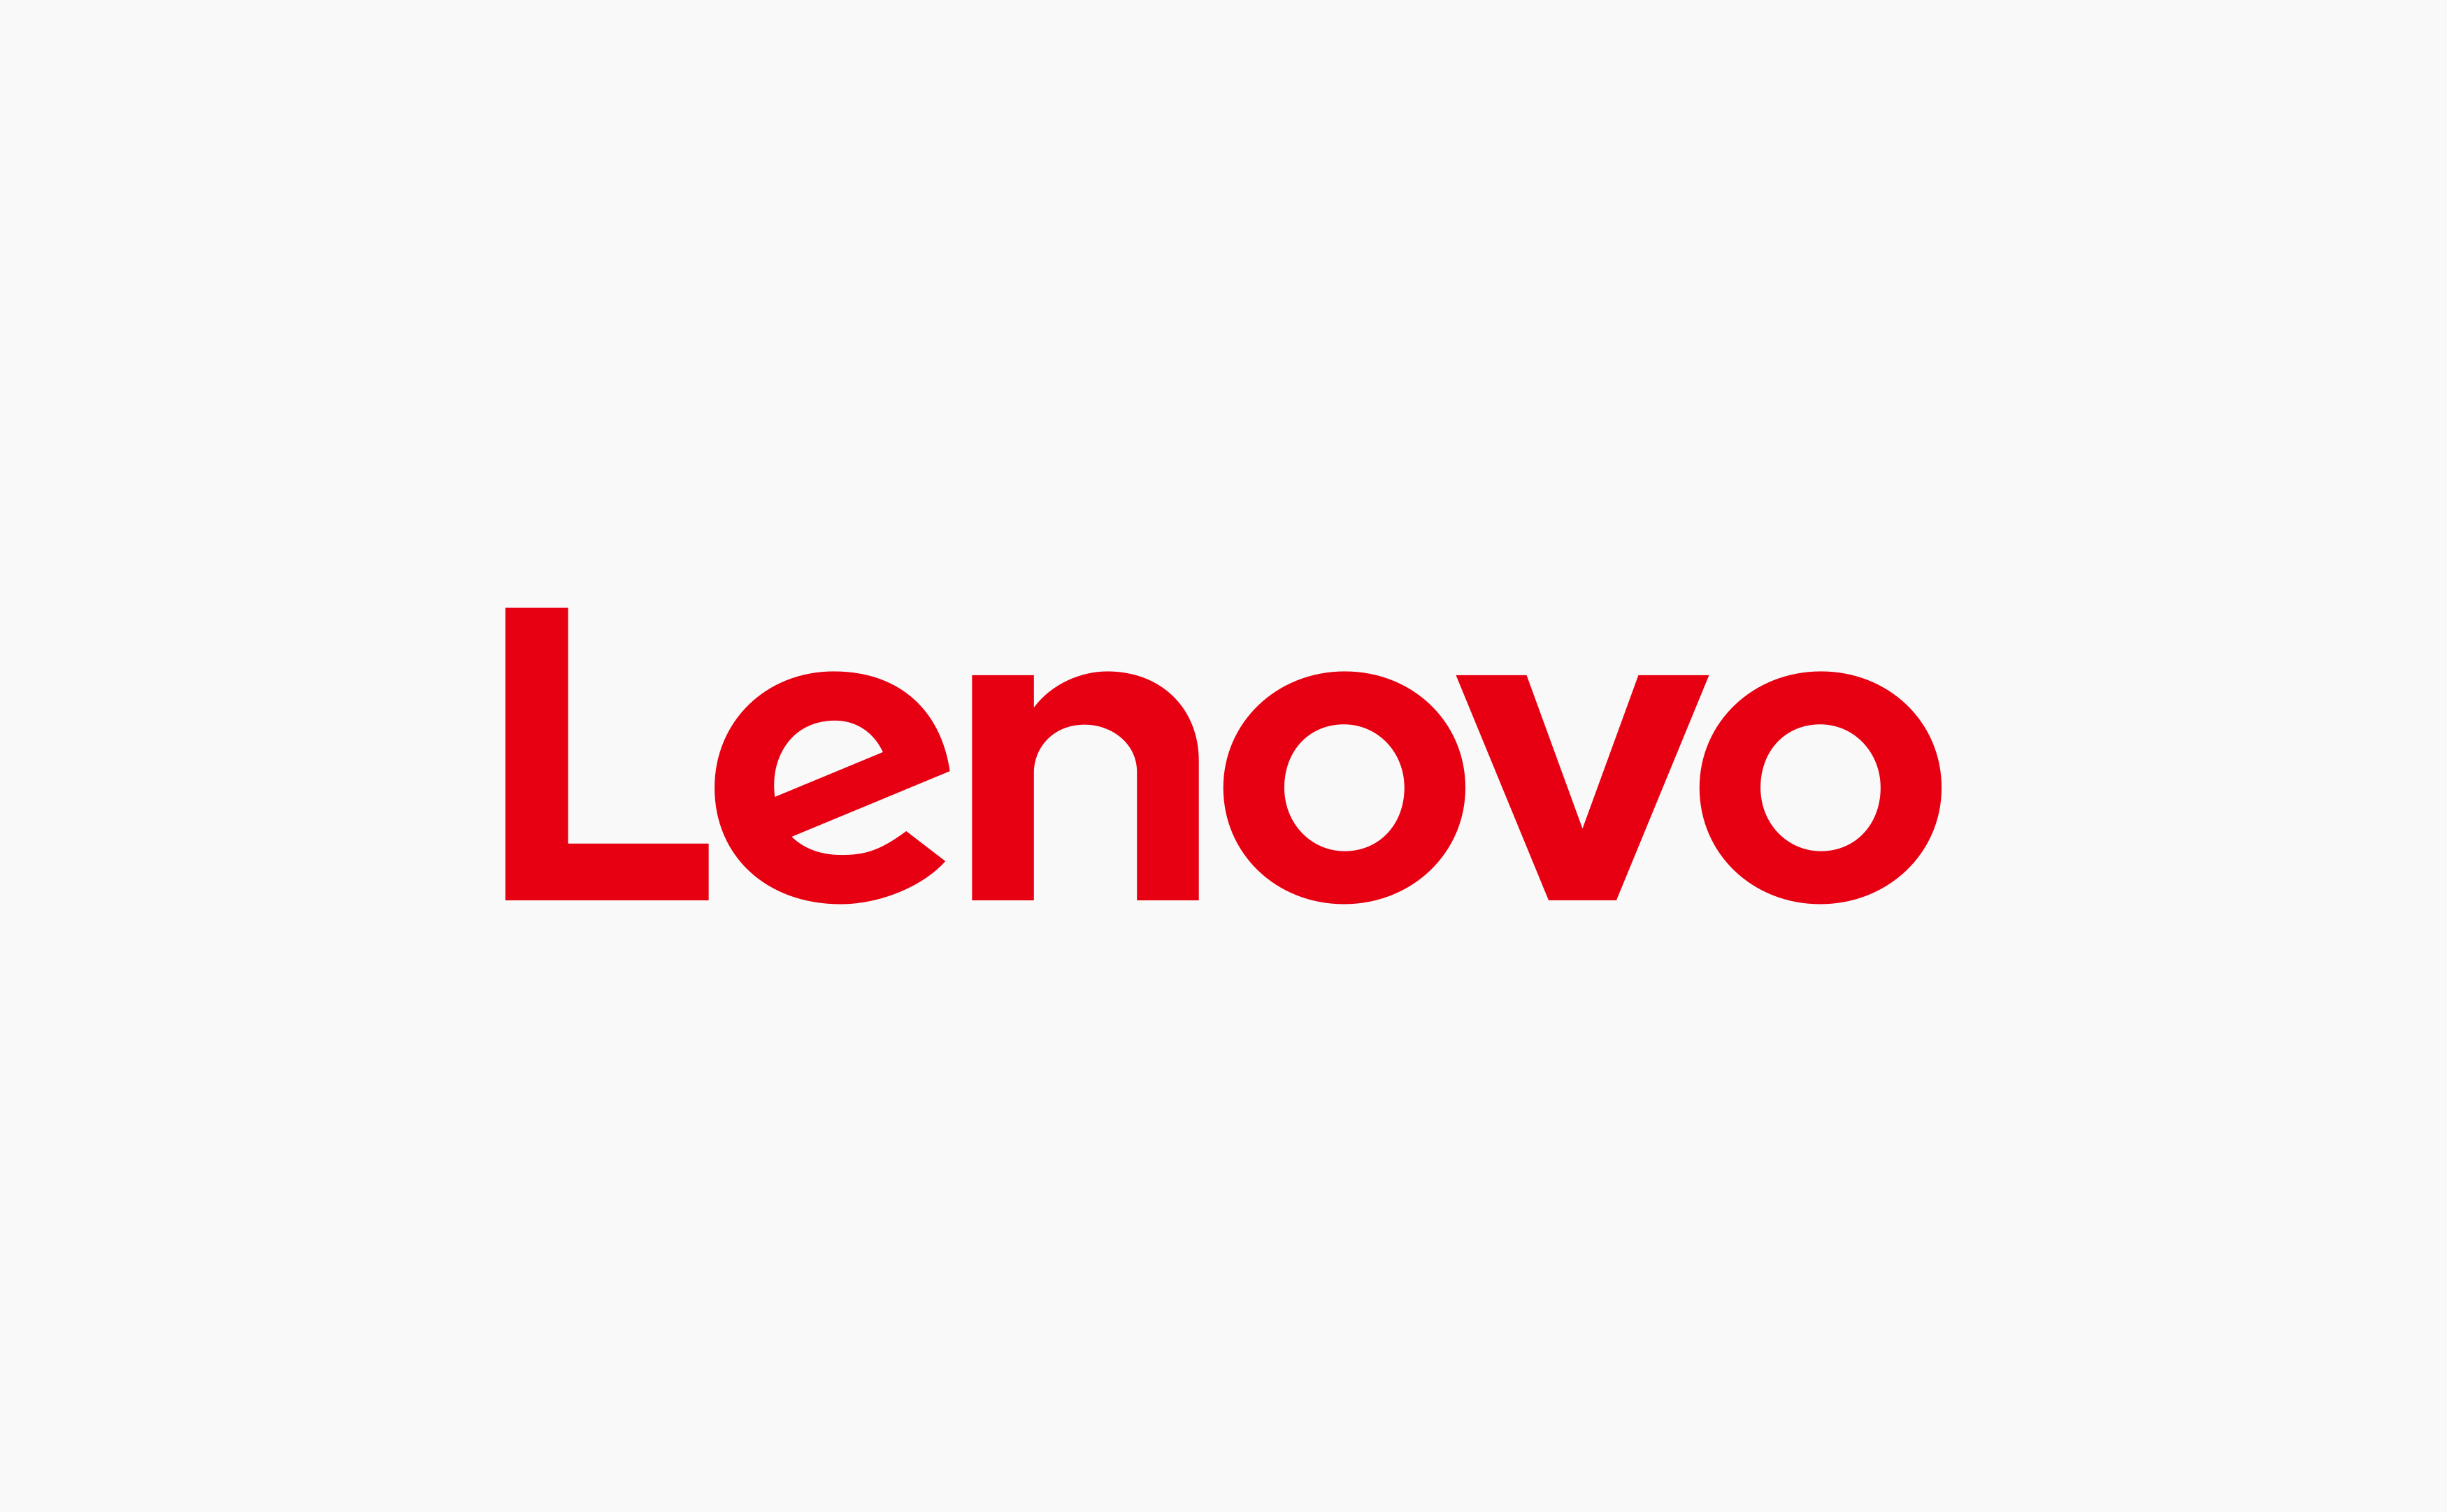 lenovo logo 16 - Lenovo Logo